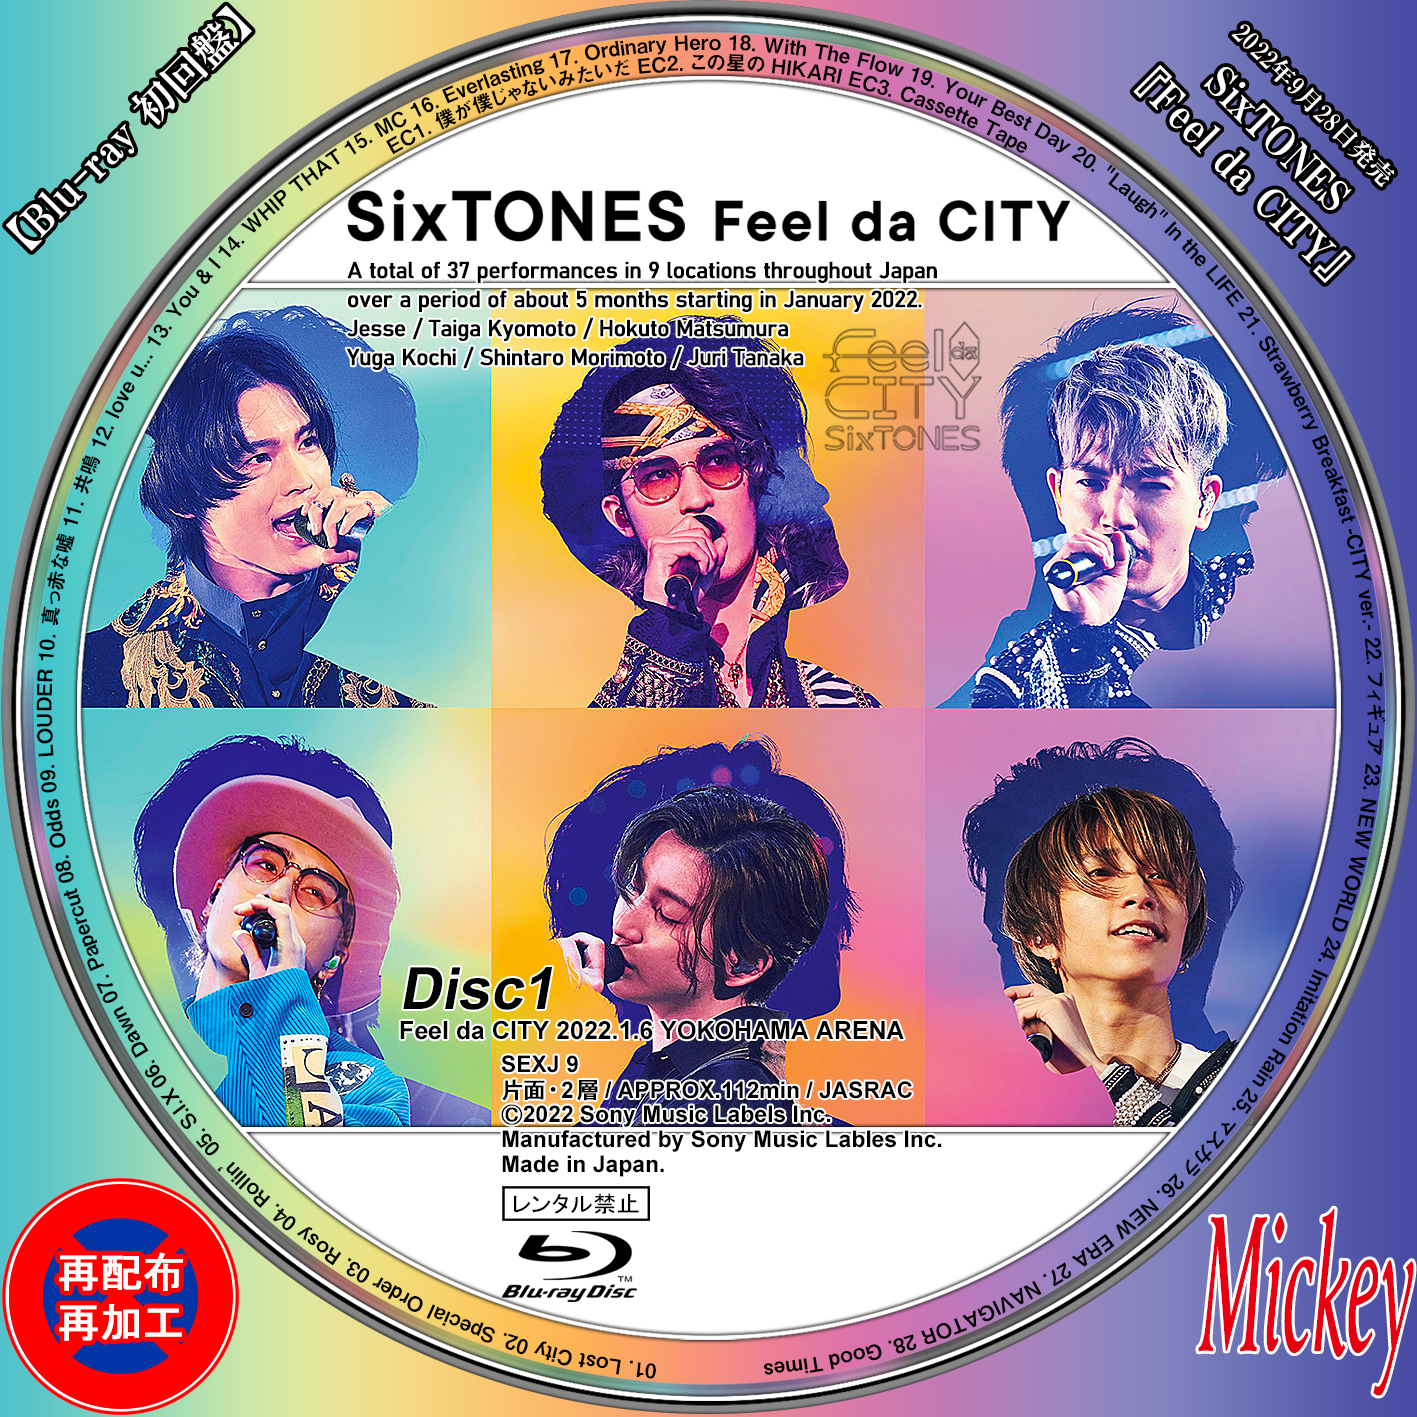 SixTONES Feel da CITY 2形態 DVDFeeldaCITY - その他